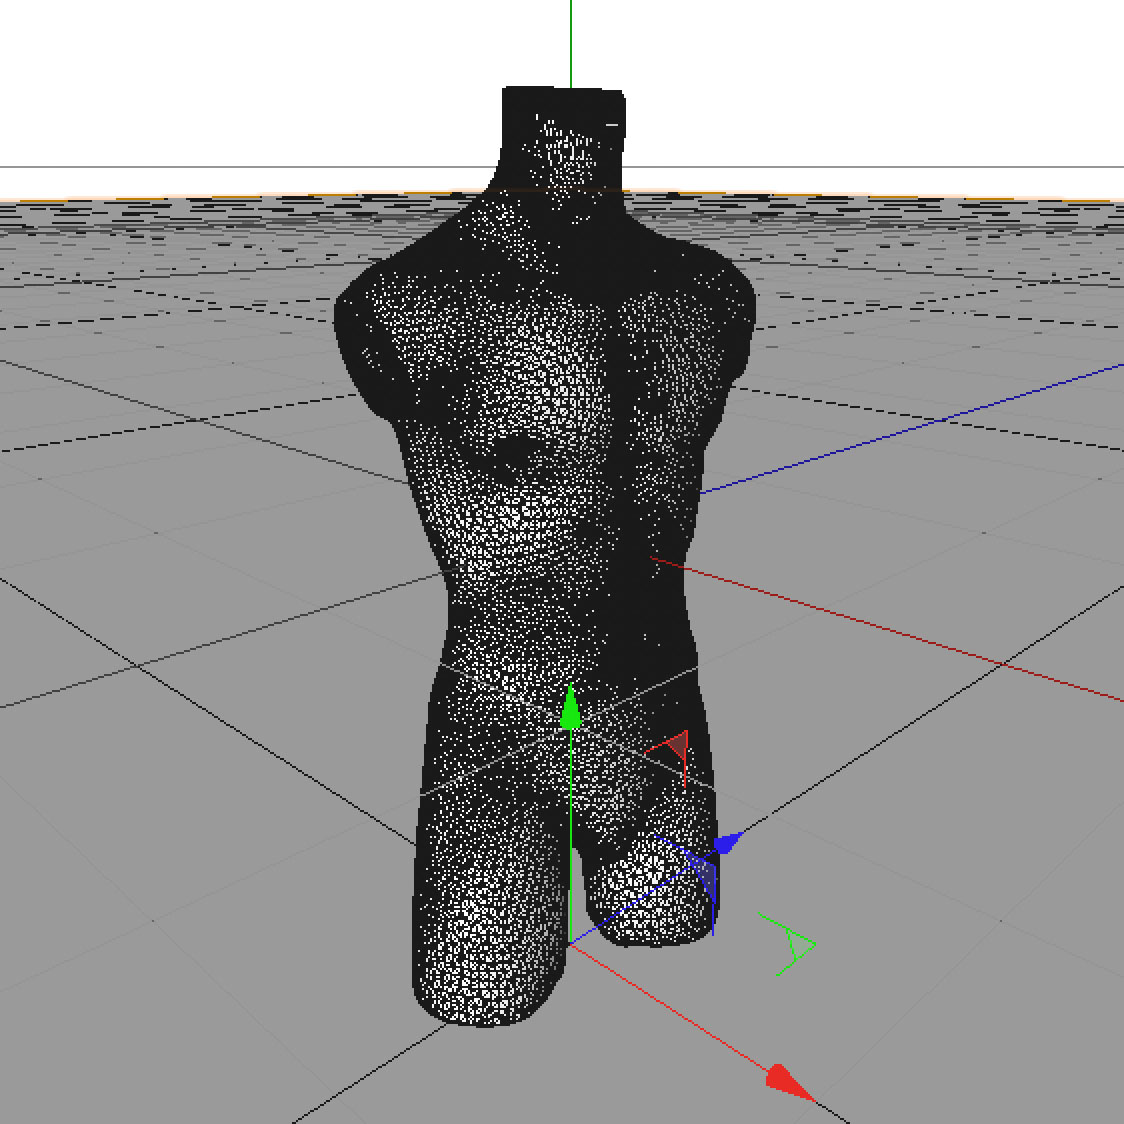 Male mannequins torso 3d model